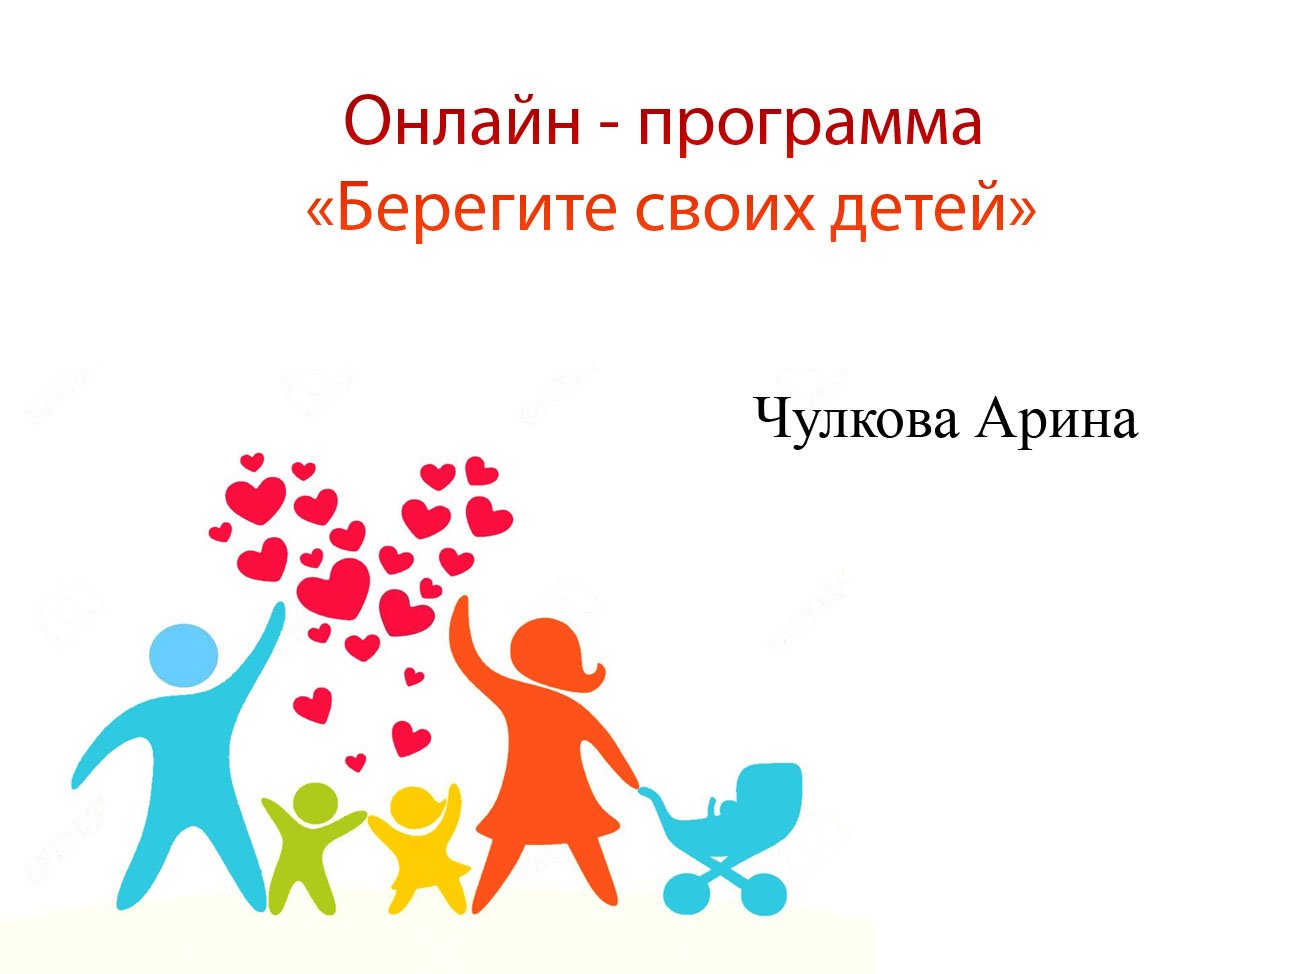 Чулкова Арина "Добрая, милая мама" - программа "Берегите своих детей"